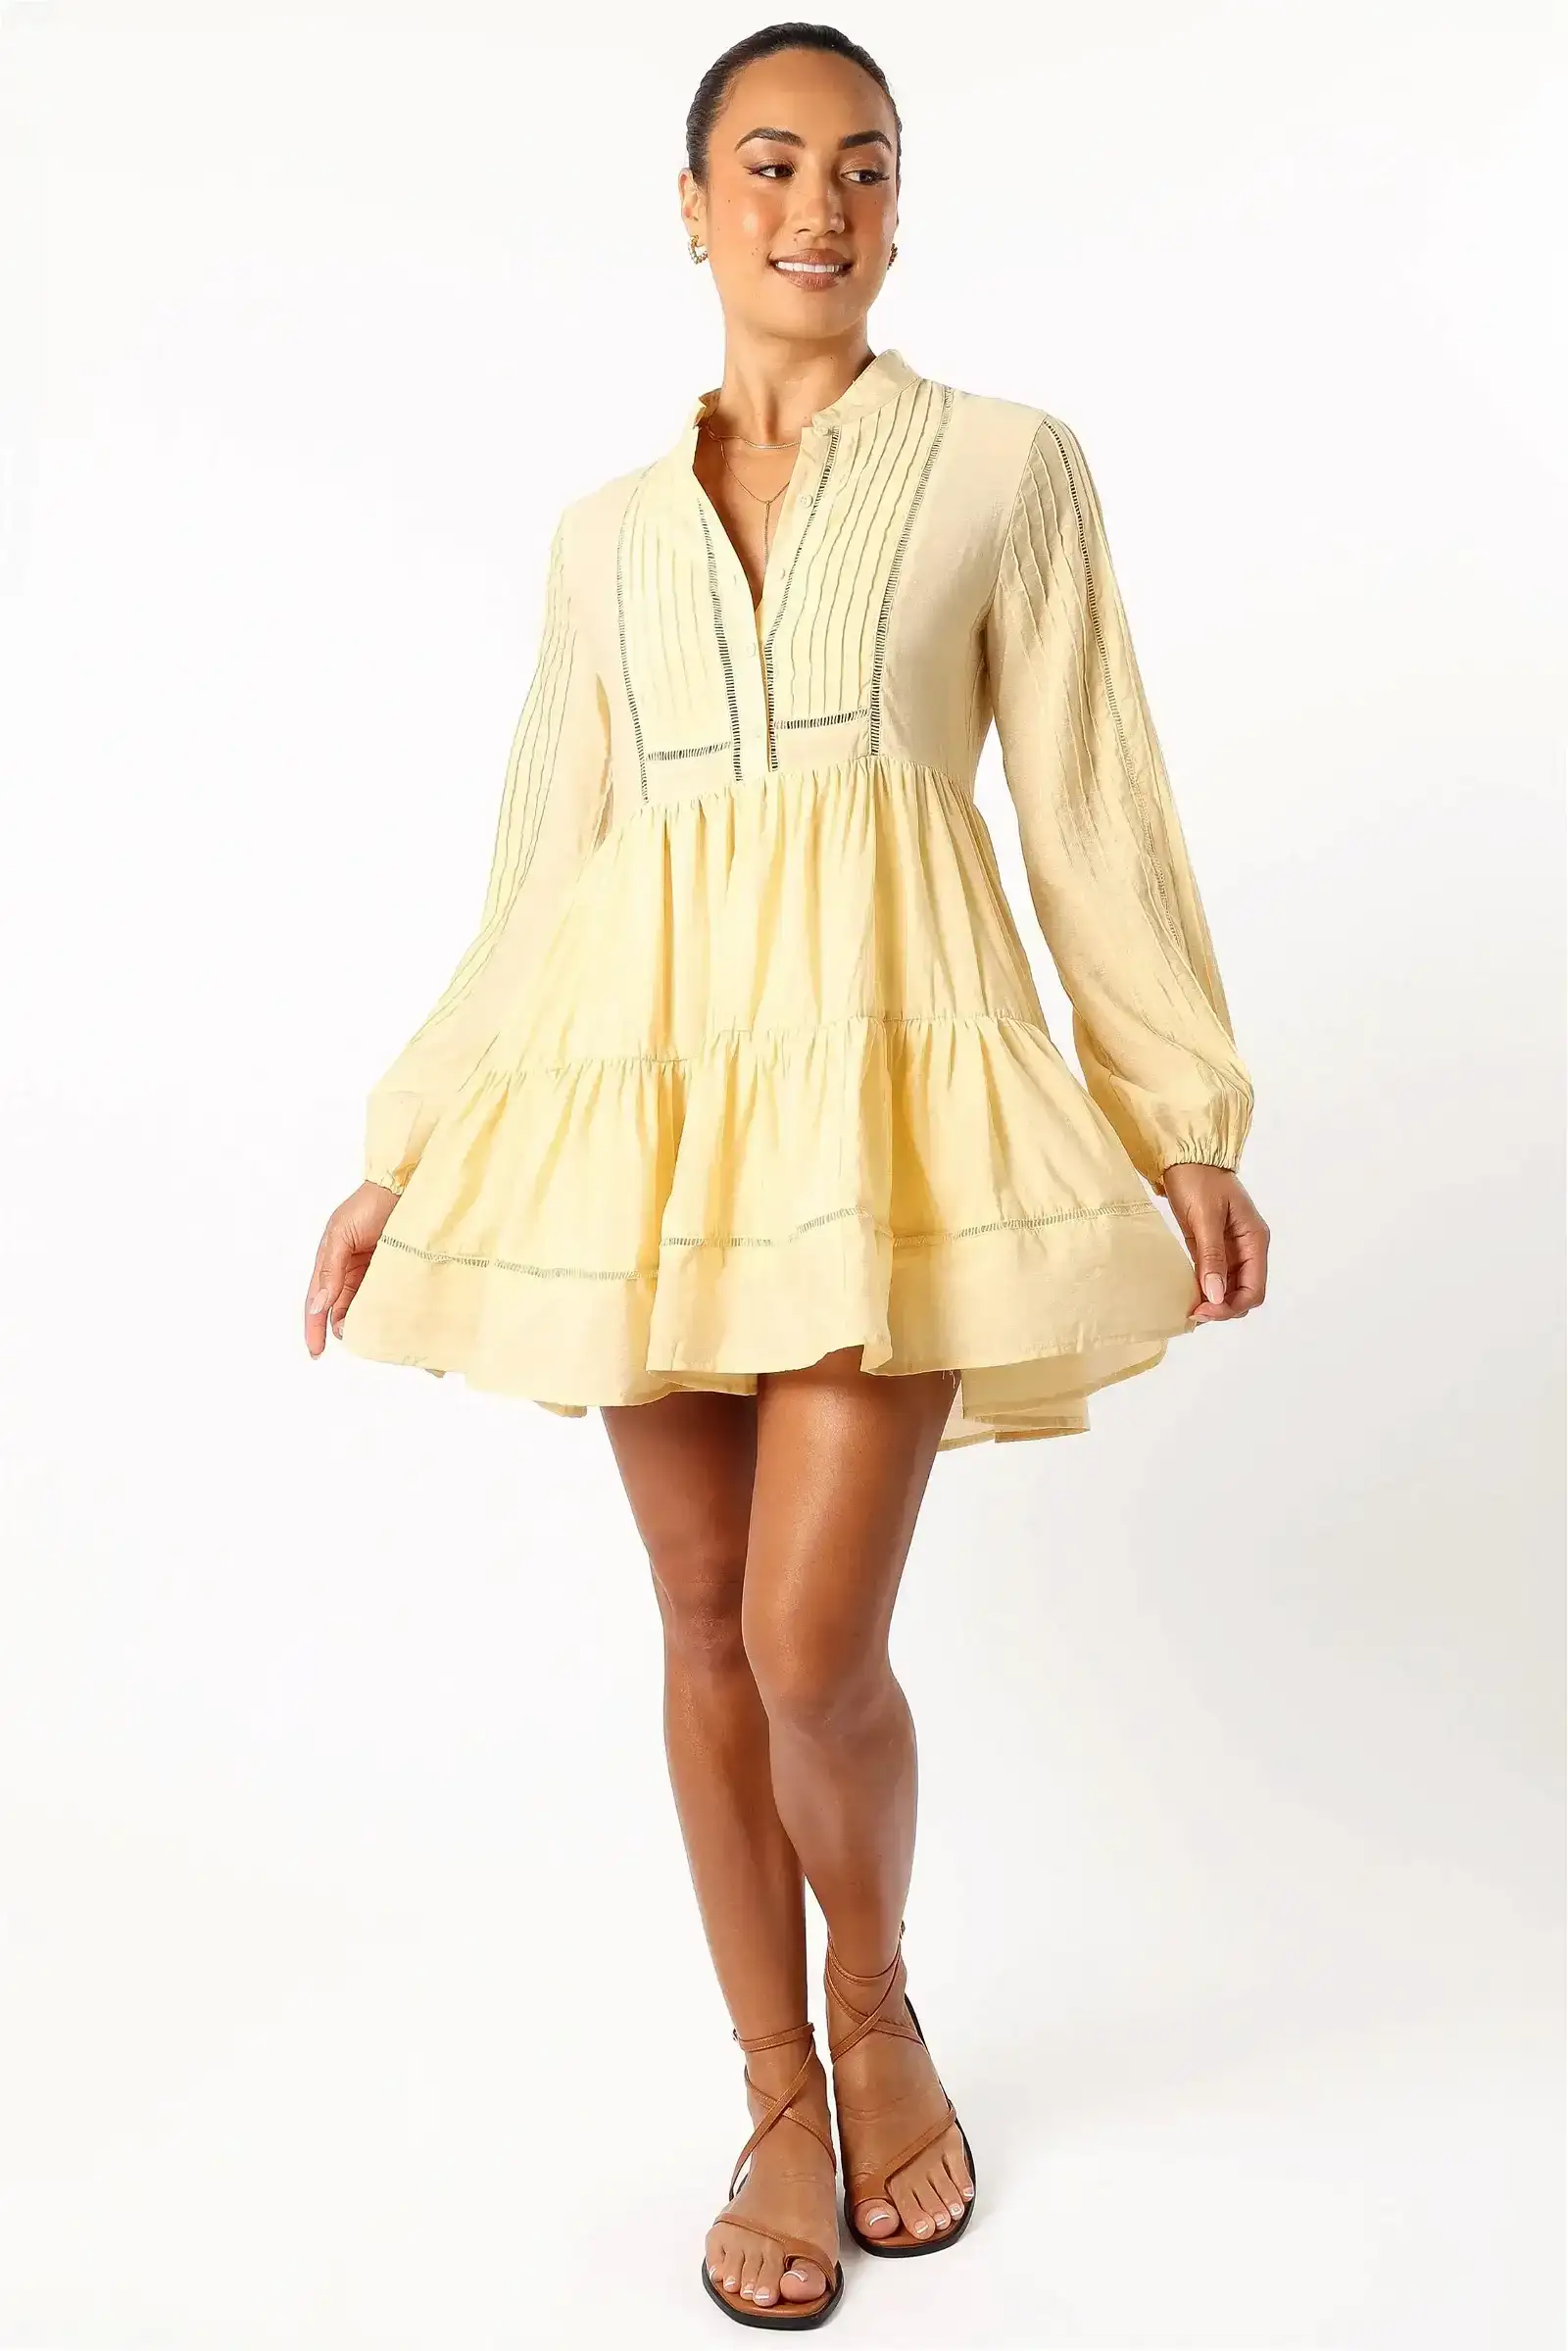 Image of Denali Long Sleeve Mini Dress - Tan Yellow